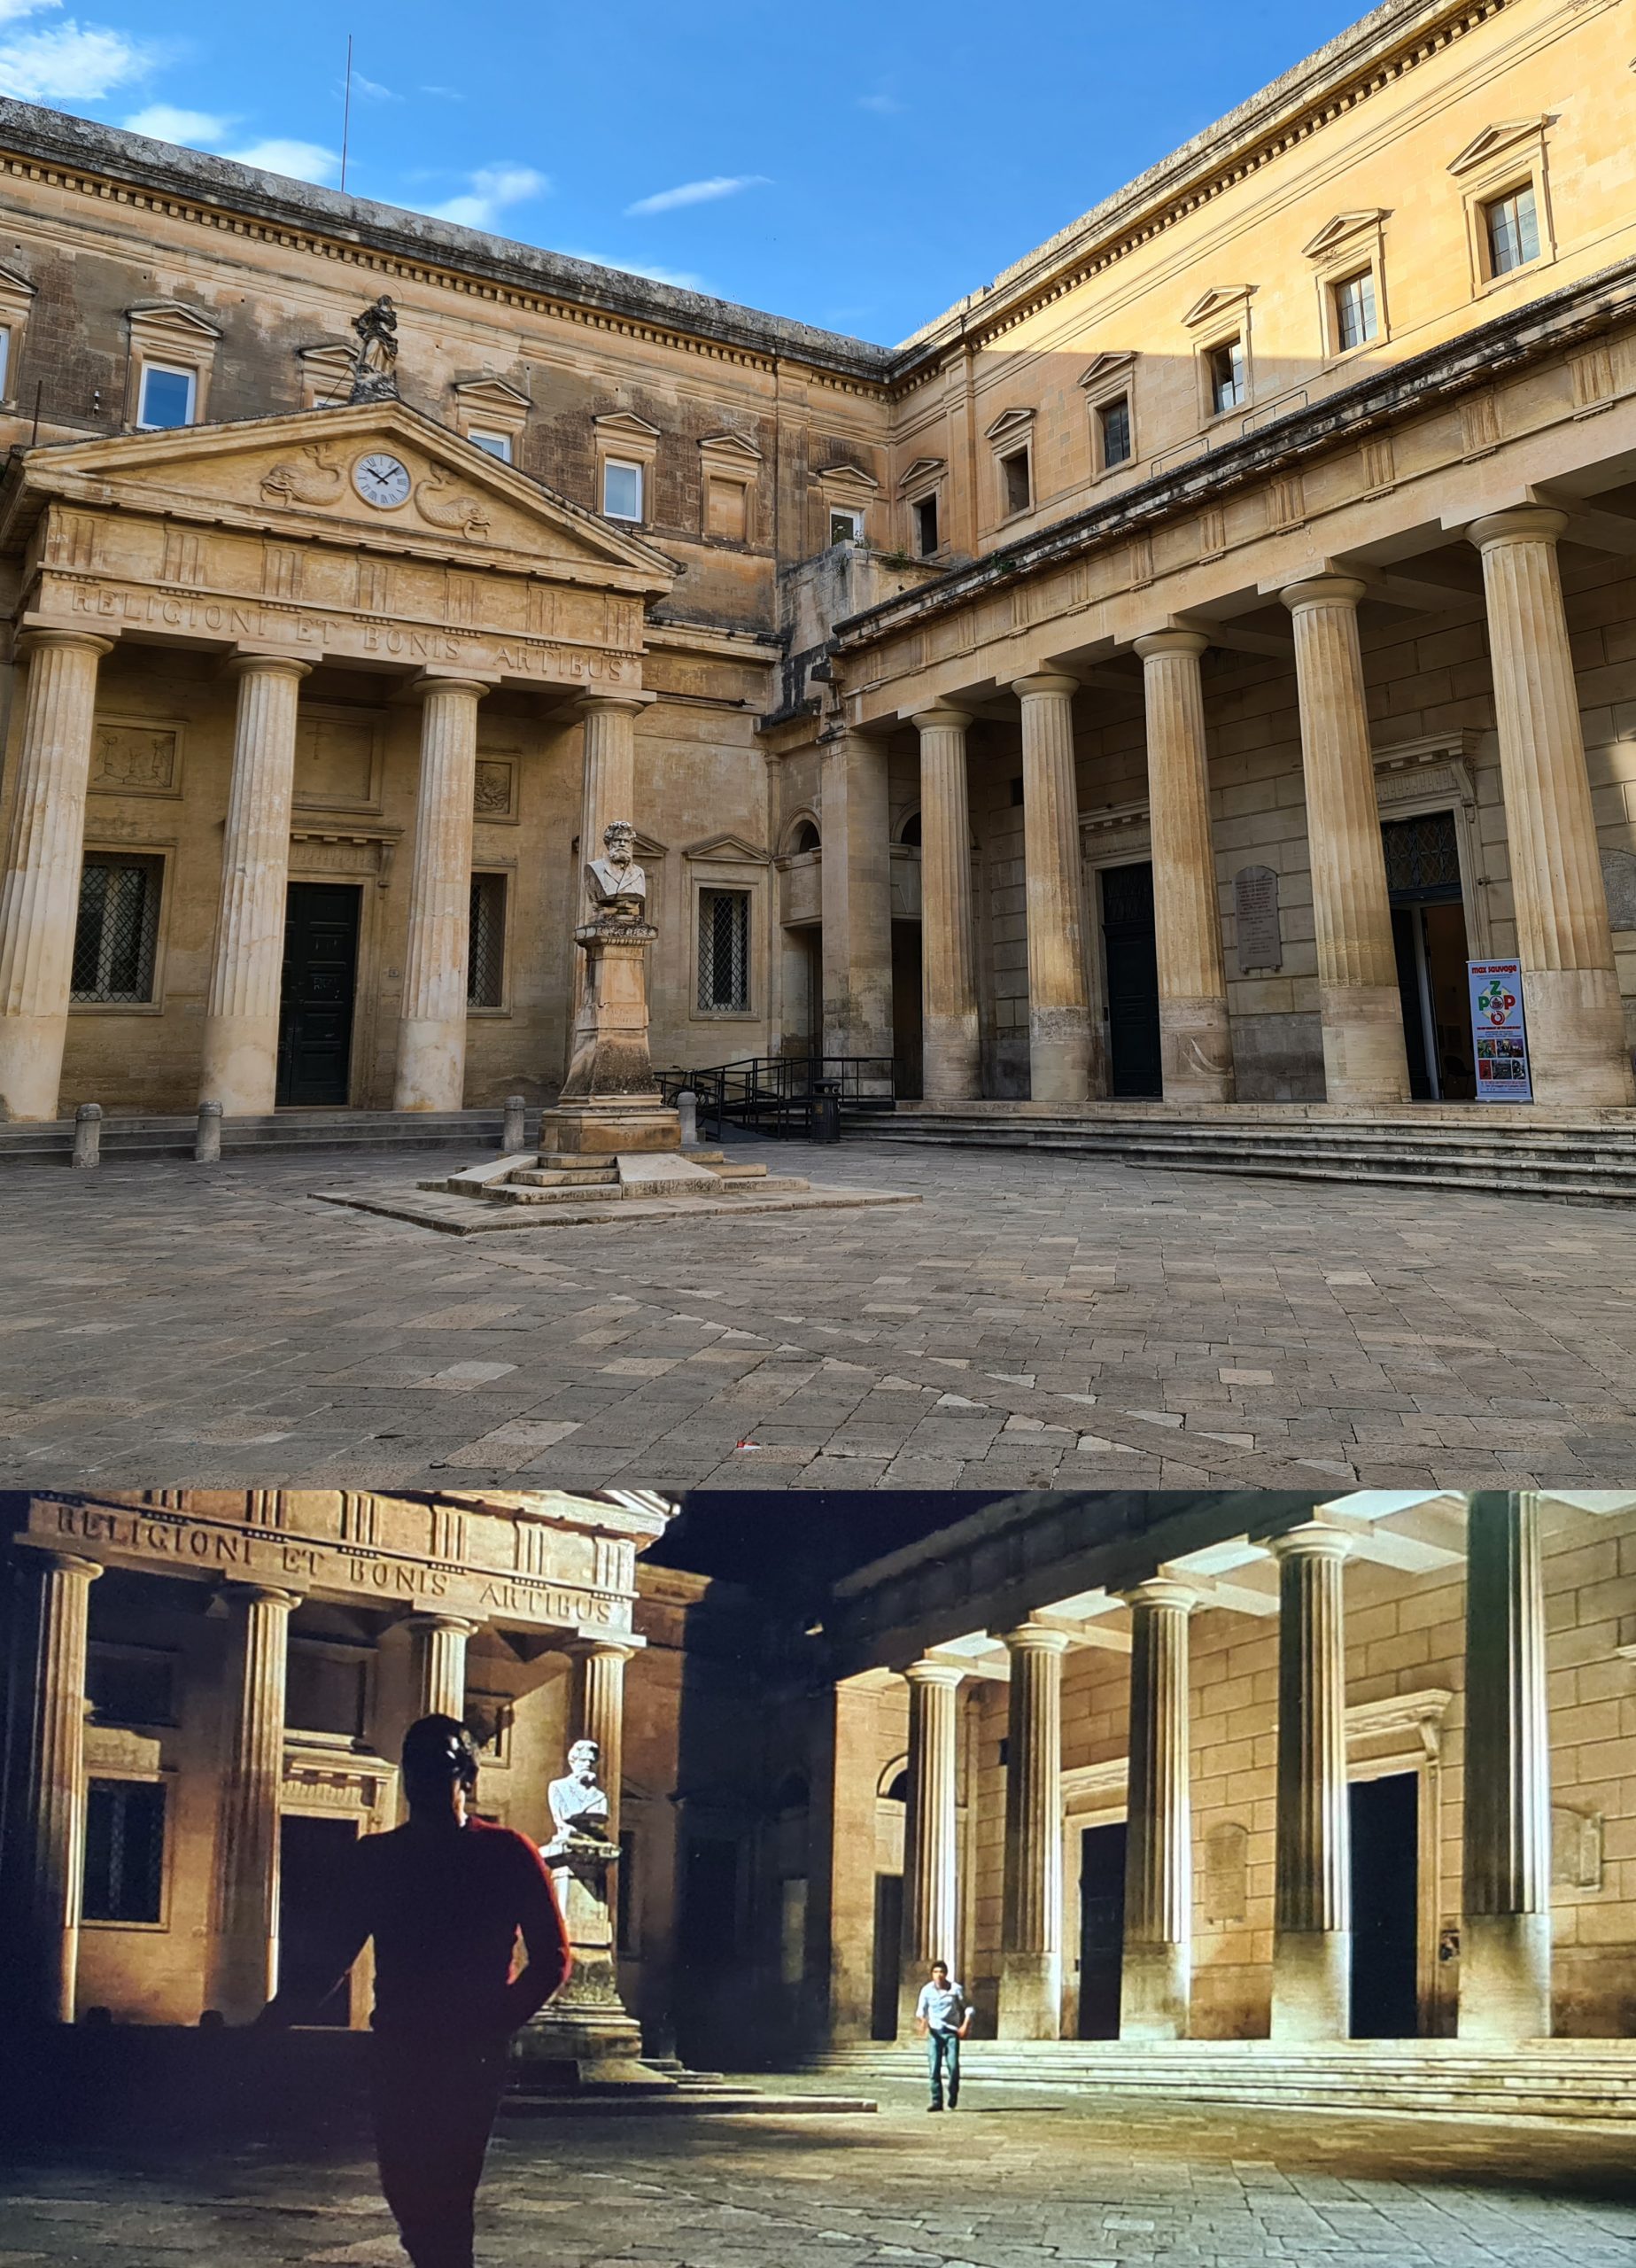 A Lecce l'itinerario continua con piazzetta Carducci, che ha al centro una statua del poeta ed un colonnato a racchiuderla